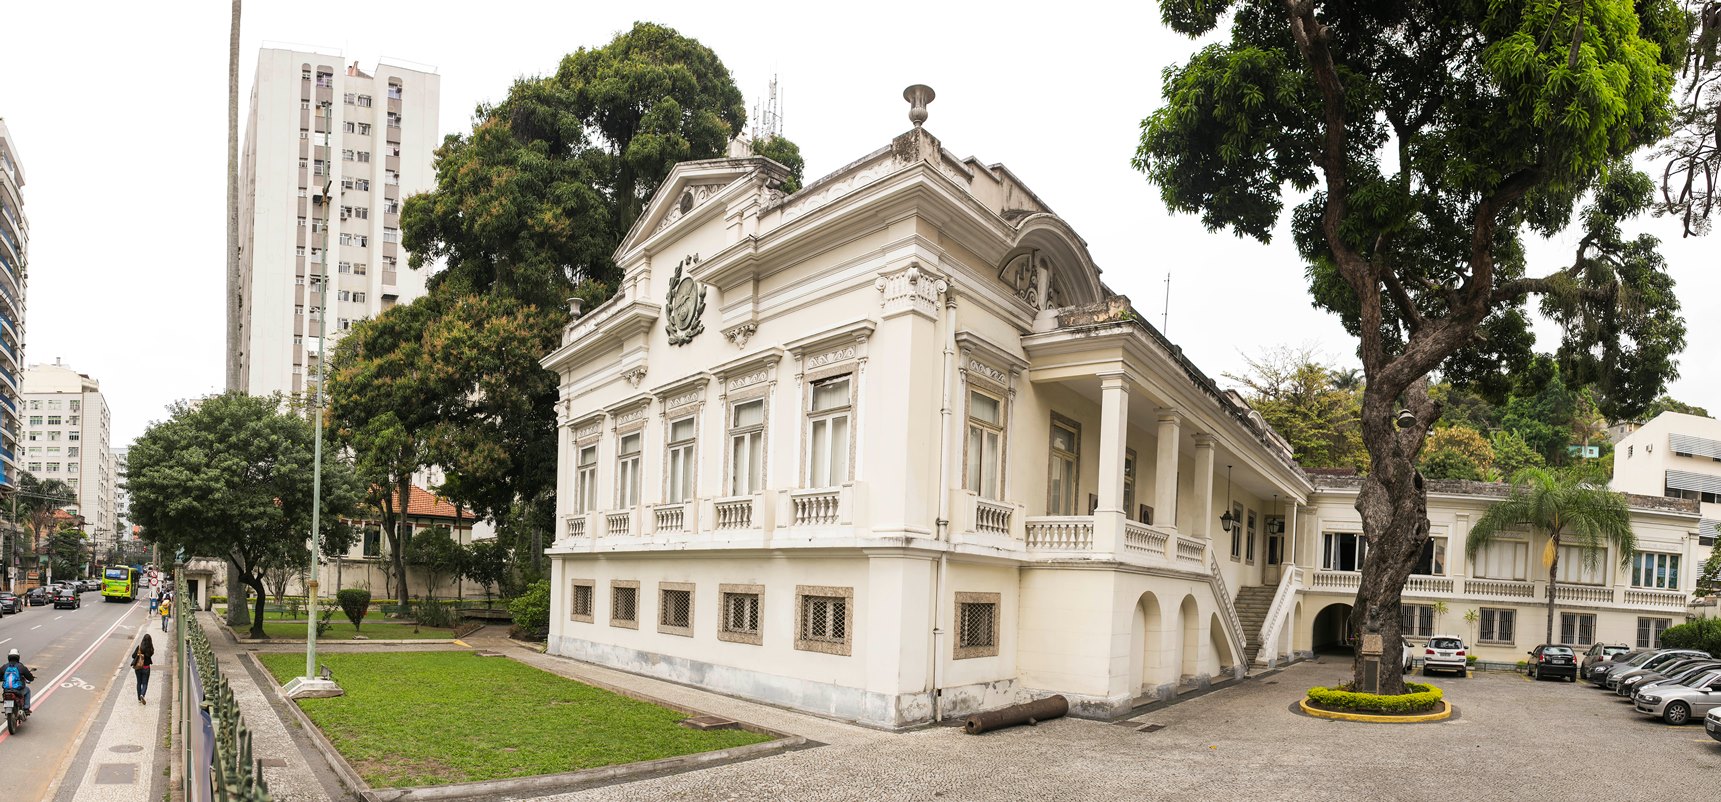 Circuito Cultural nas Unidades Museológicas de Niterói começa em abril